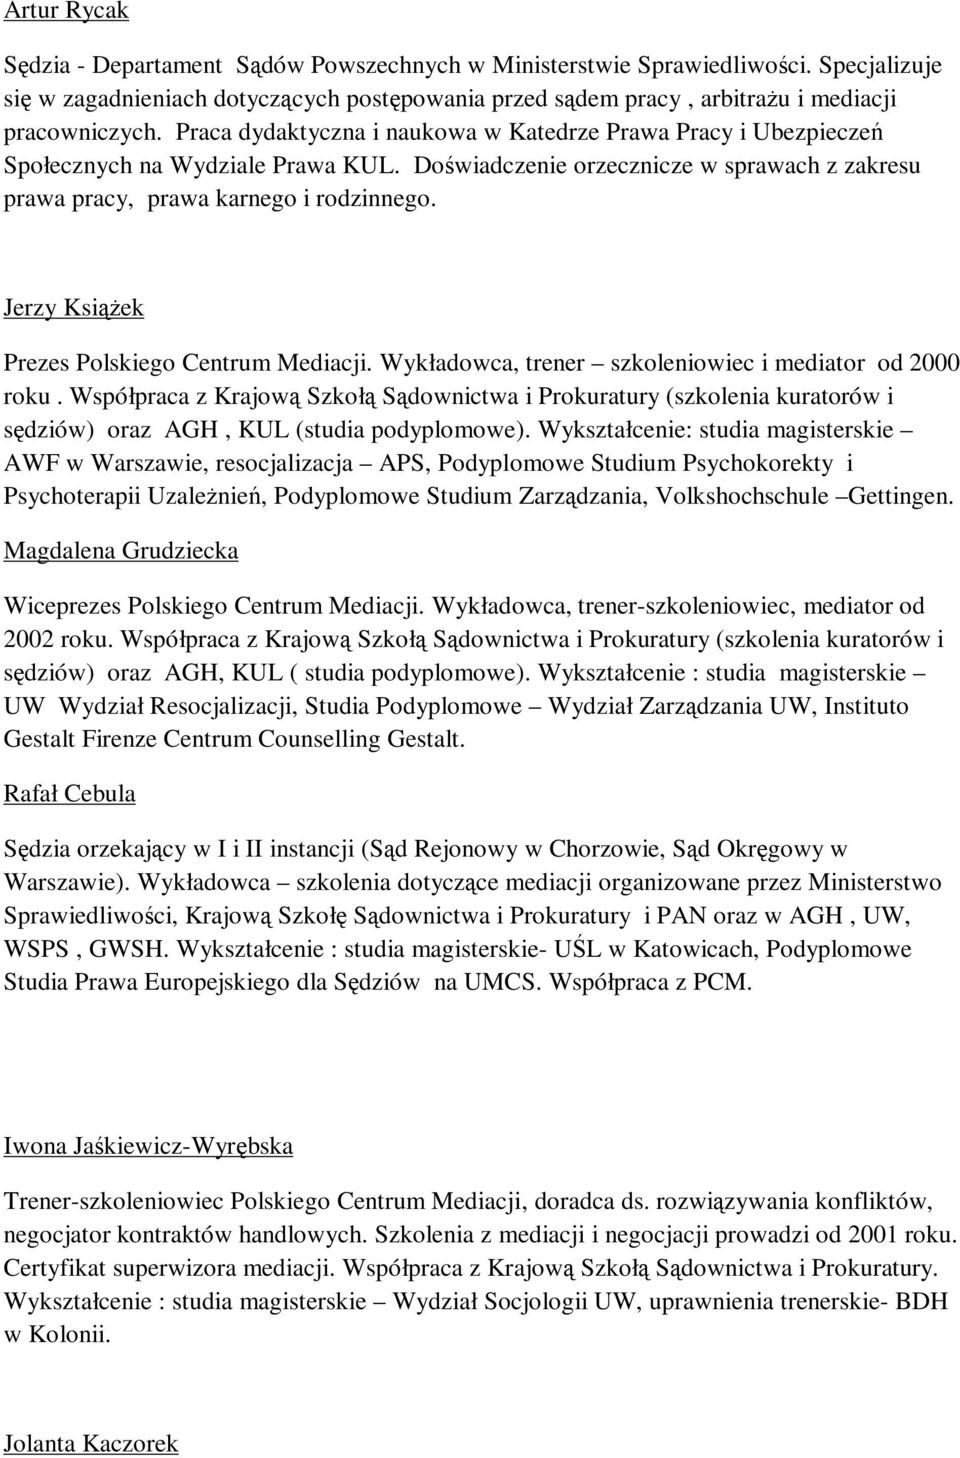 Jerzy Książek Prezes Polskiego Centrum Mediacji. Wykładowca, trener szkoleniowiec i mediator od 2000 roku.